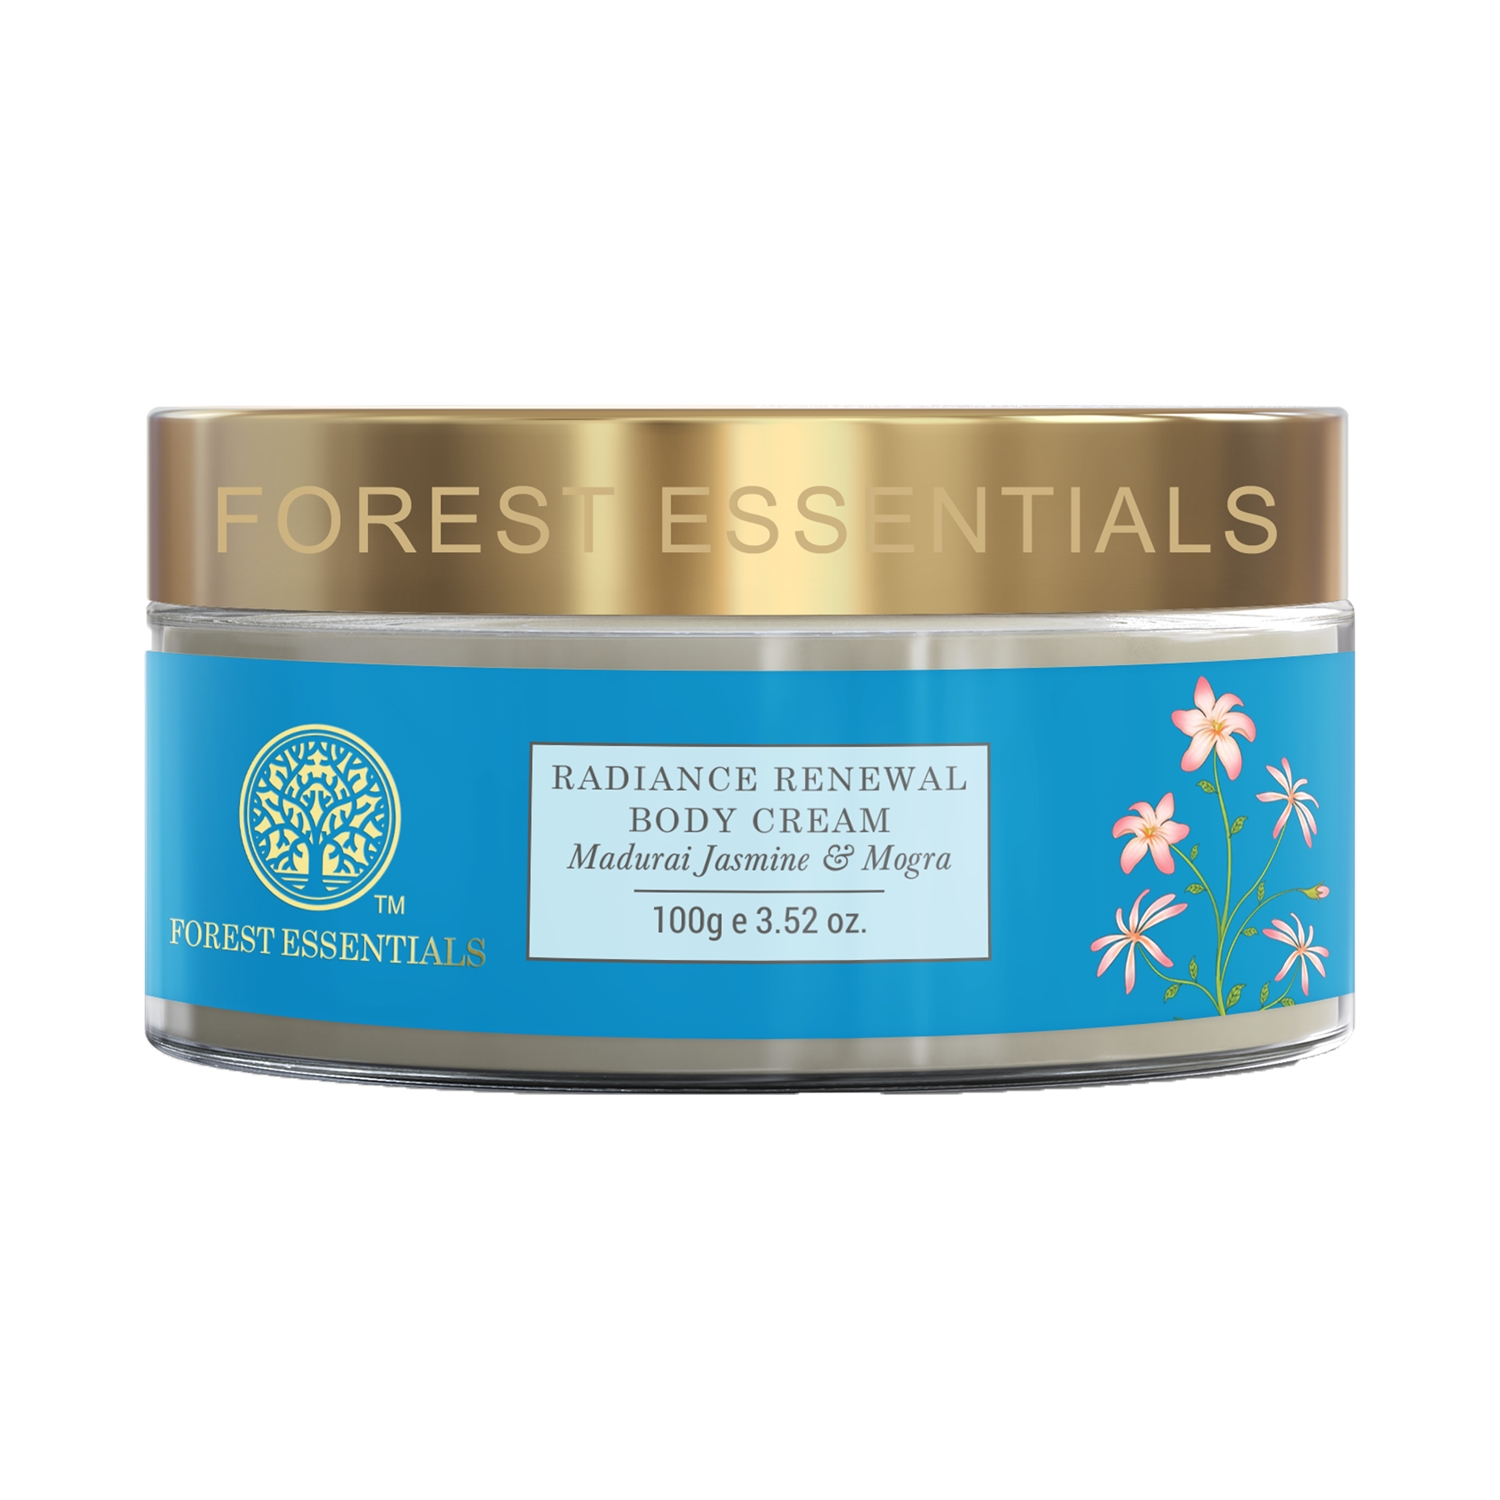 Forest Essentials | Forest Essentials Madurai Jasmine & Mogra Radiance Renewal Body Cream (100g)